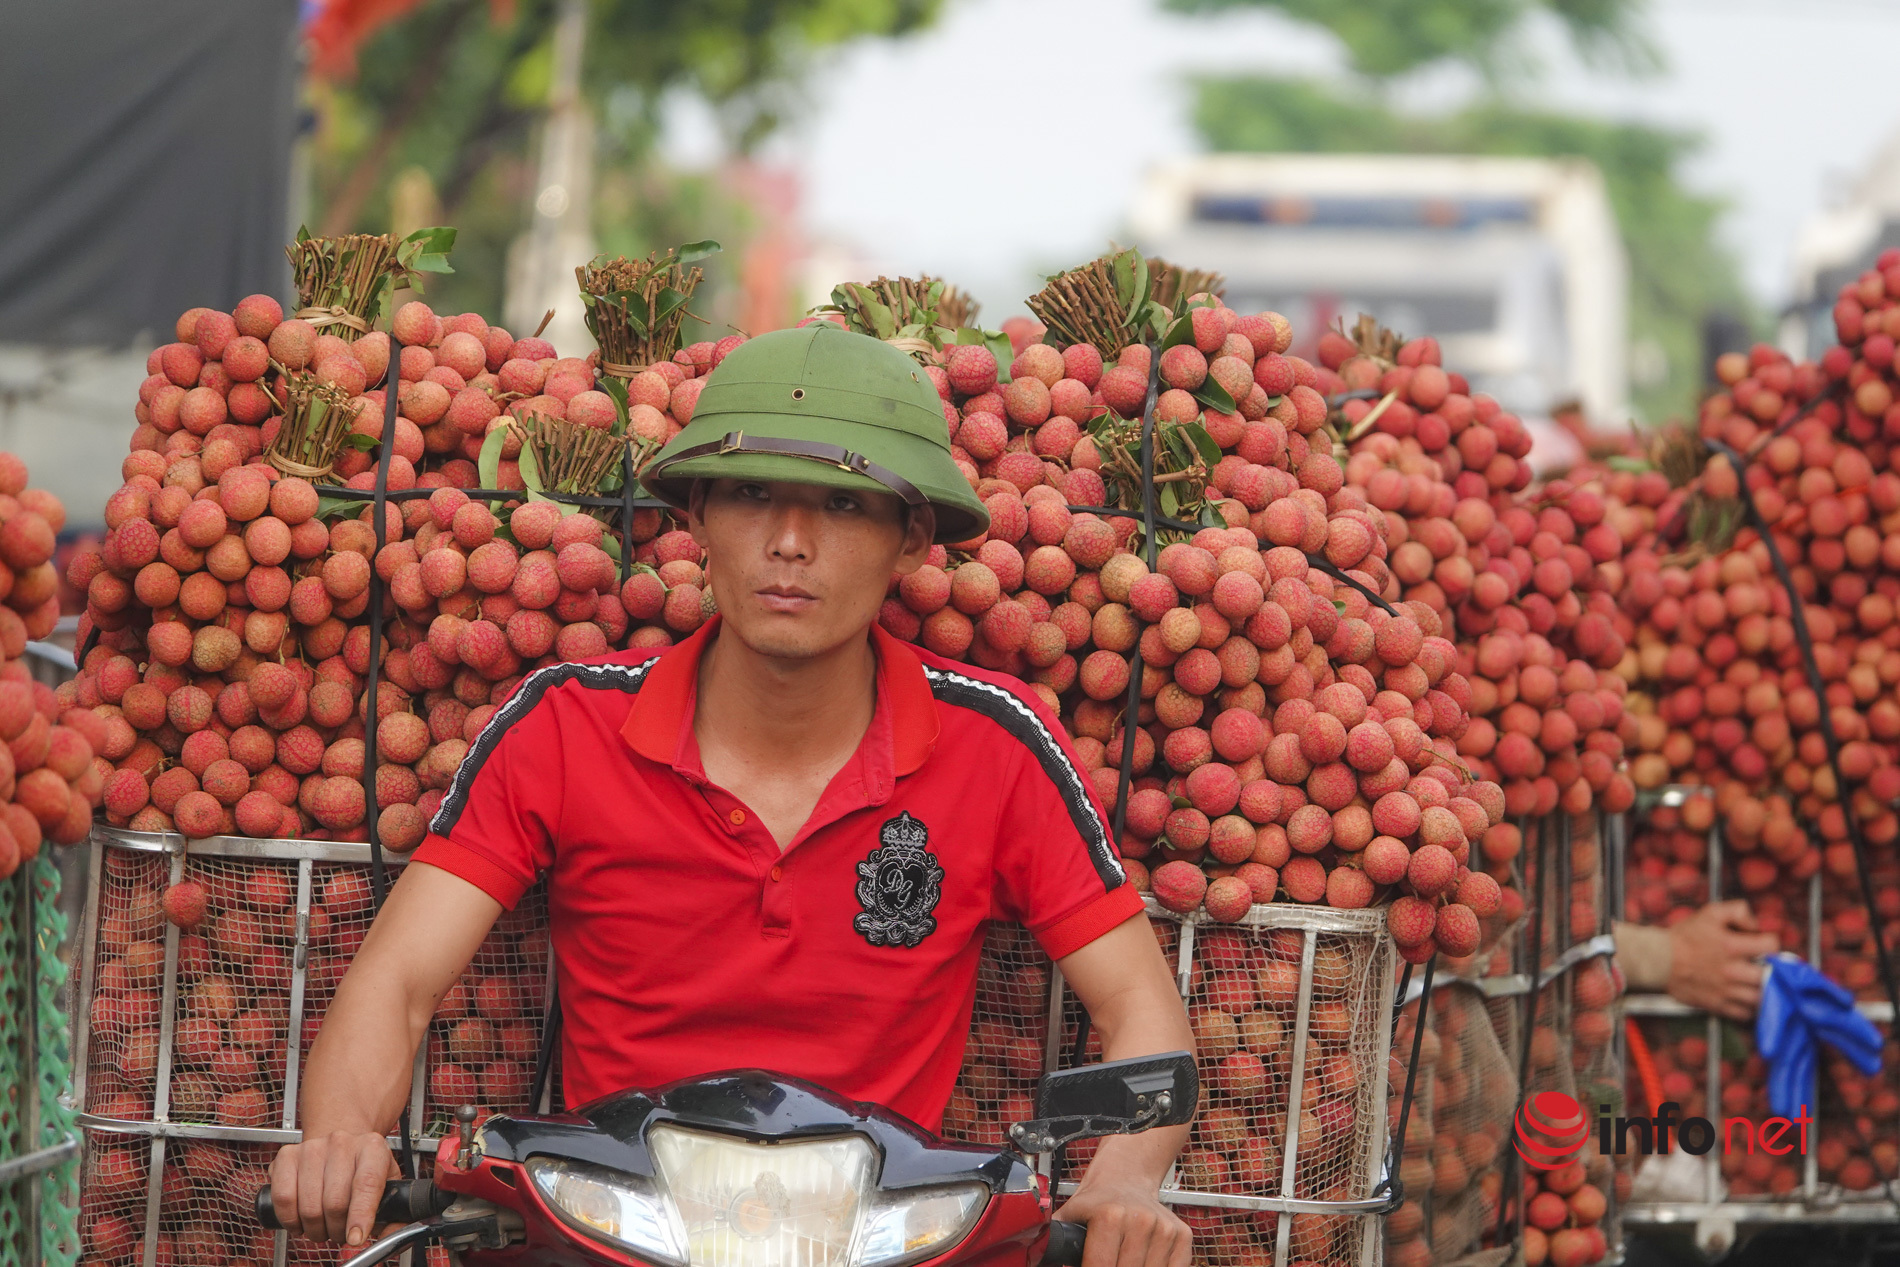 Bắc Giang: Vải vào vụ chín đỏ vườn, 5h sáng phóng xe máy cõng gần 2 tạ quả đi đổ buôn, quốc lộ 31 tắc dài